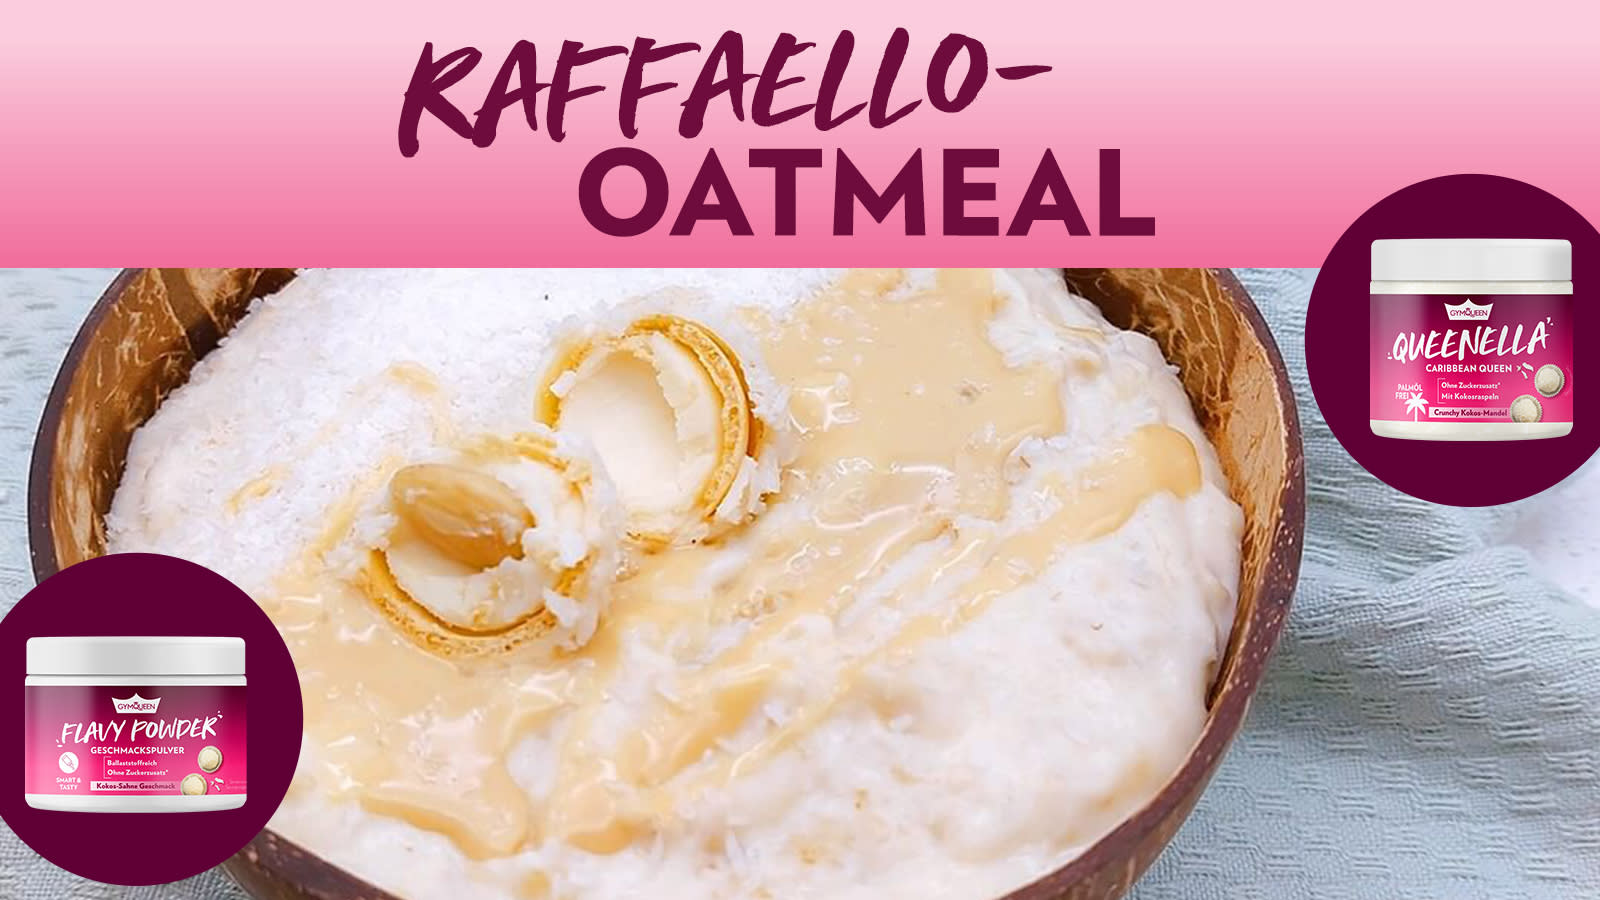 Raffaello Oatmeal